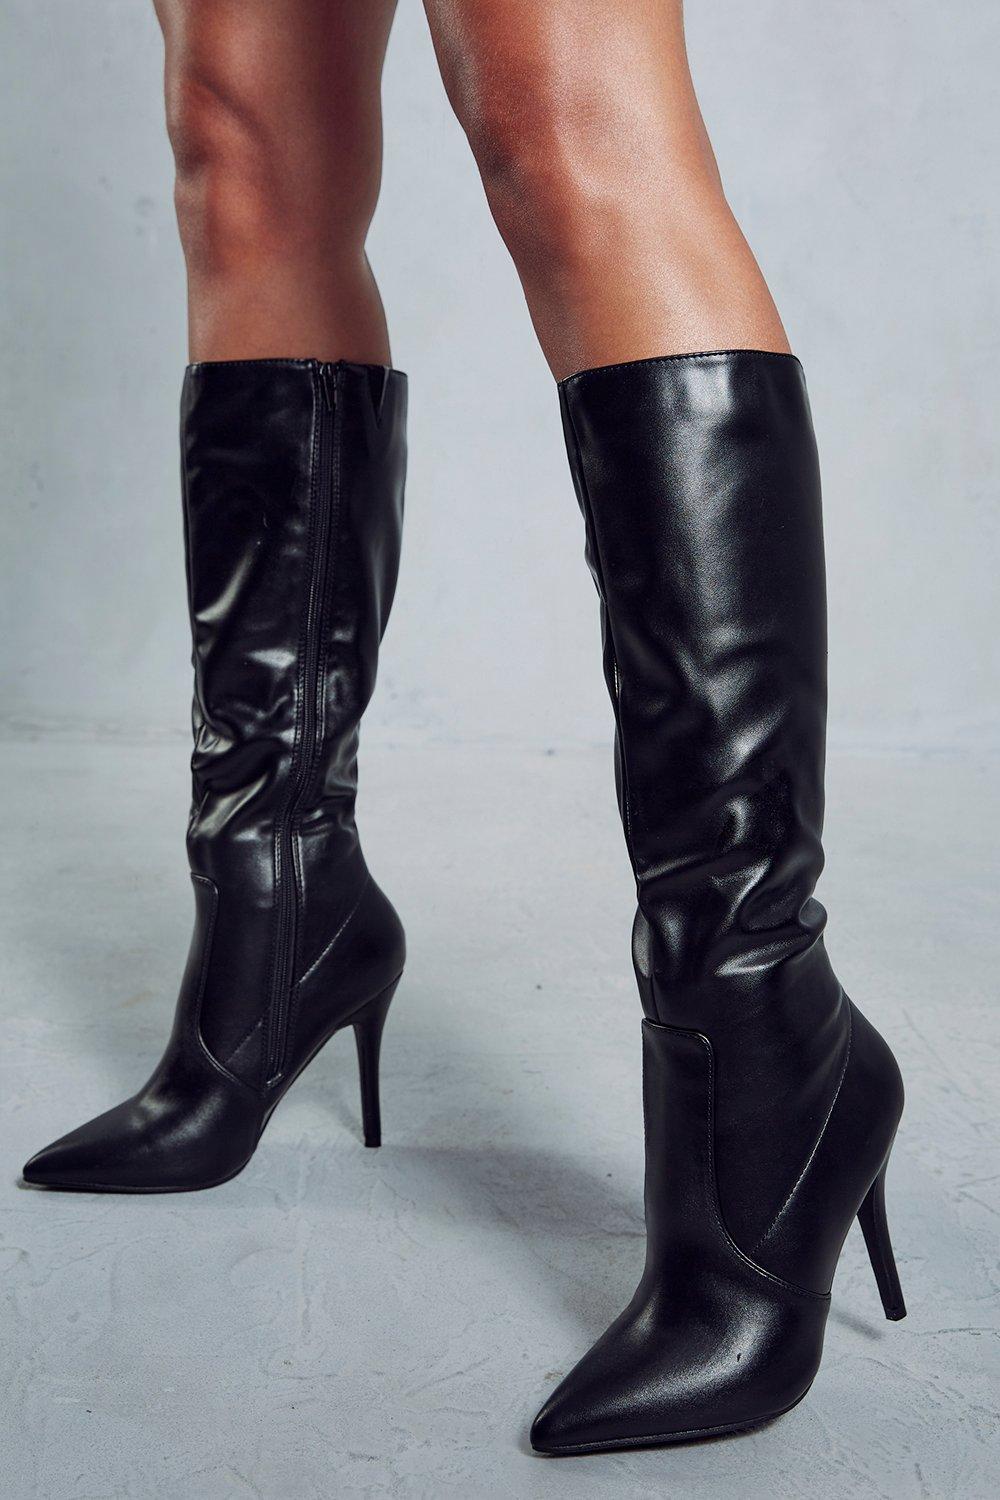 Кожаные сапоги до колена с острым носком MISSPAP, черный женские ажурные сапоги выше колена черные кожаные сапоги с острым носком на высоком каблуке шпильке на ремешках новинка 2023